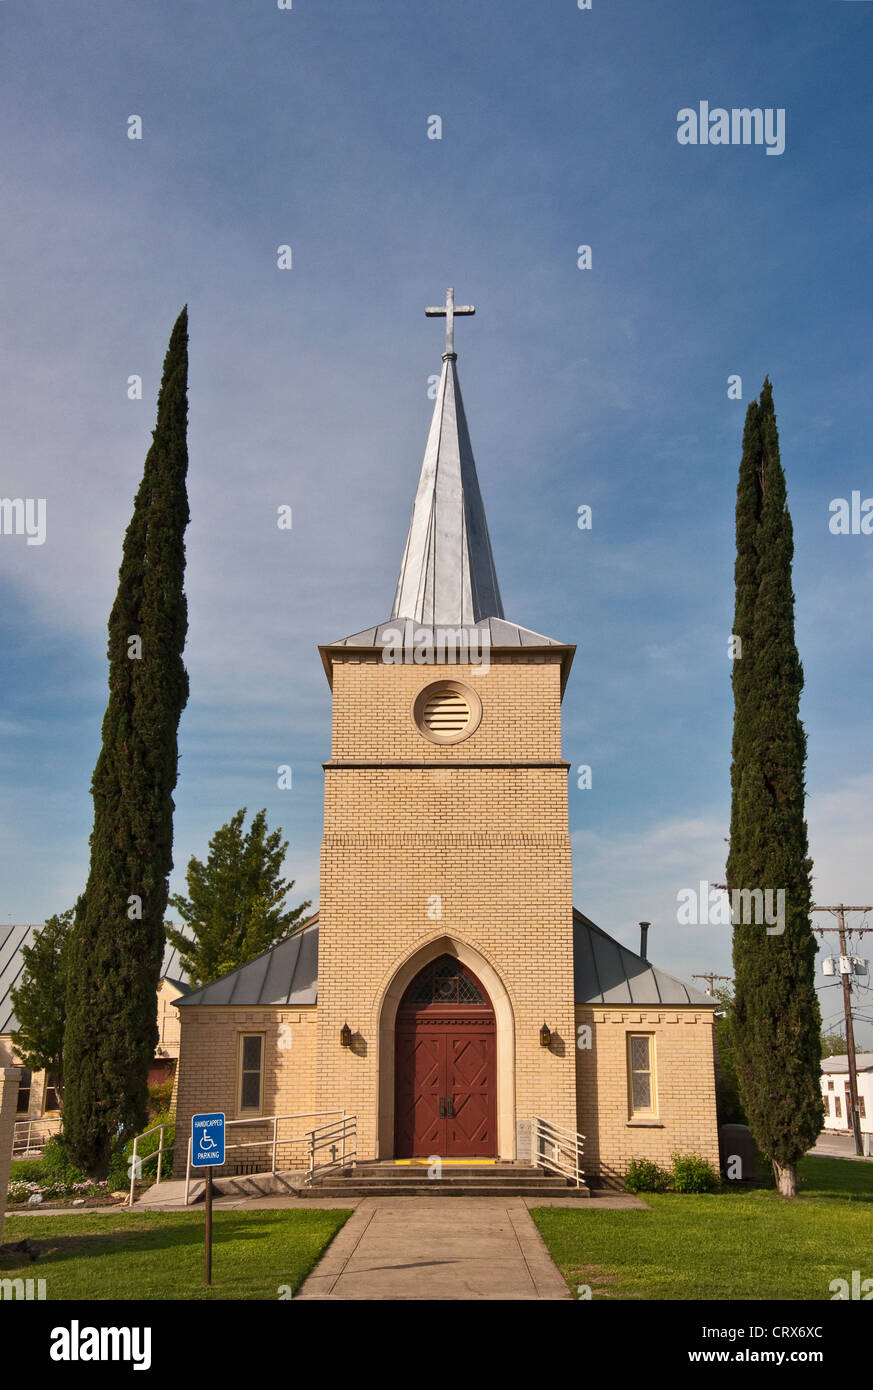 Zion Lutheran Church, construite en 1853, à pied Historique Castroville, Texas, États-Unis Banque D'Images